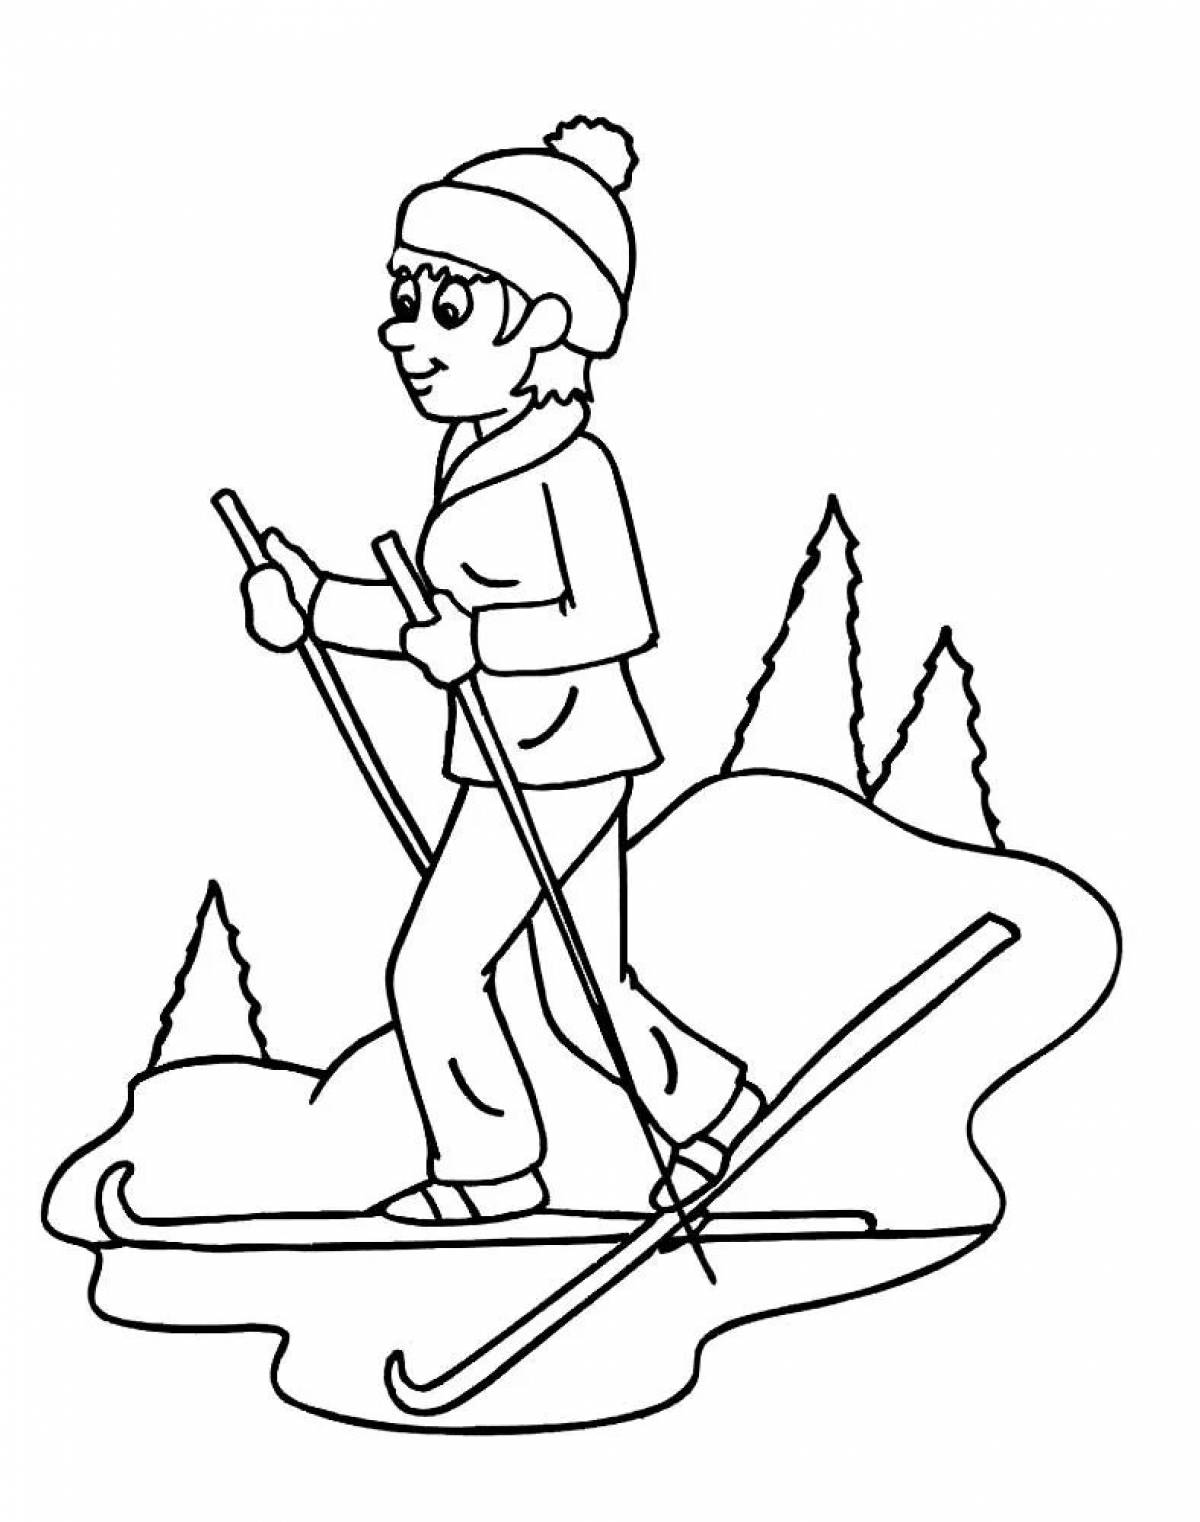 Toddler skier #15